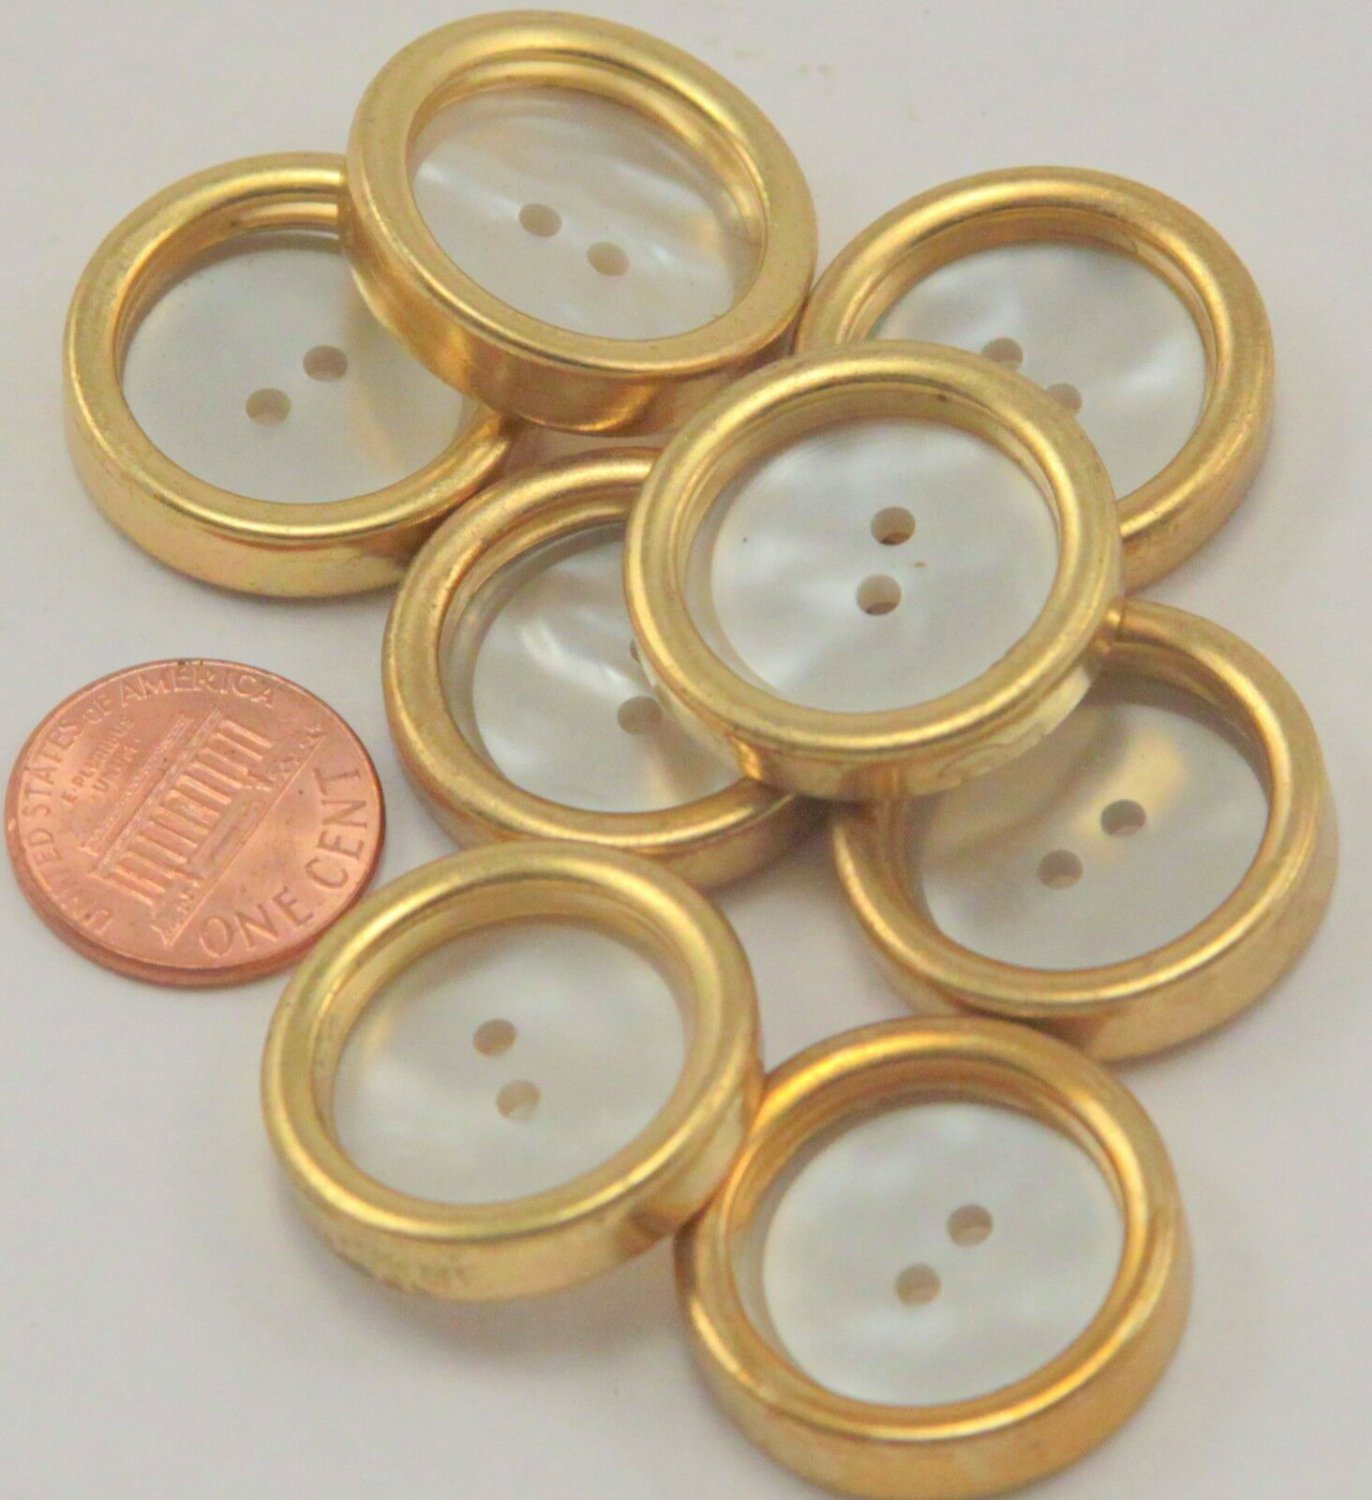 8 Large Concave Gold Tone Plastic Buttons Faux MOP 15/16" 24.5mm # 7046